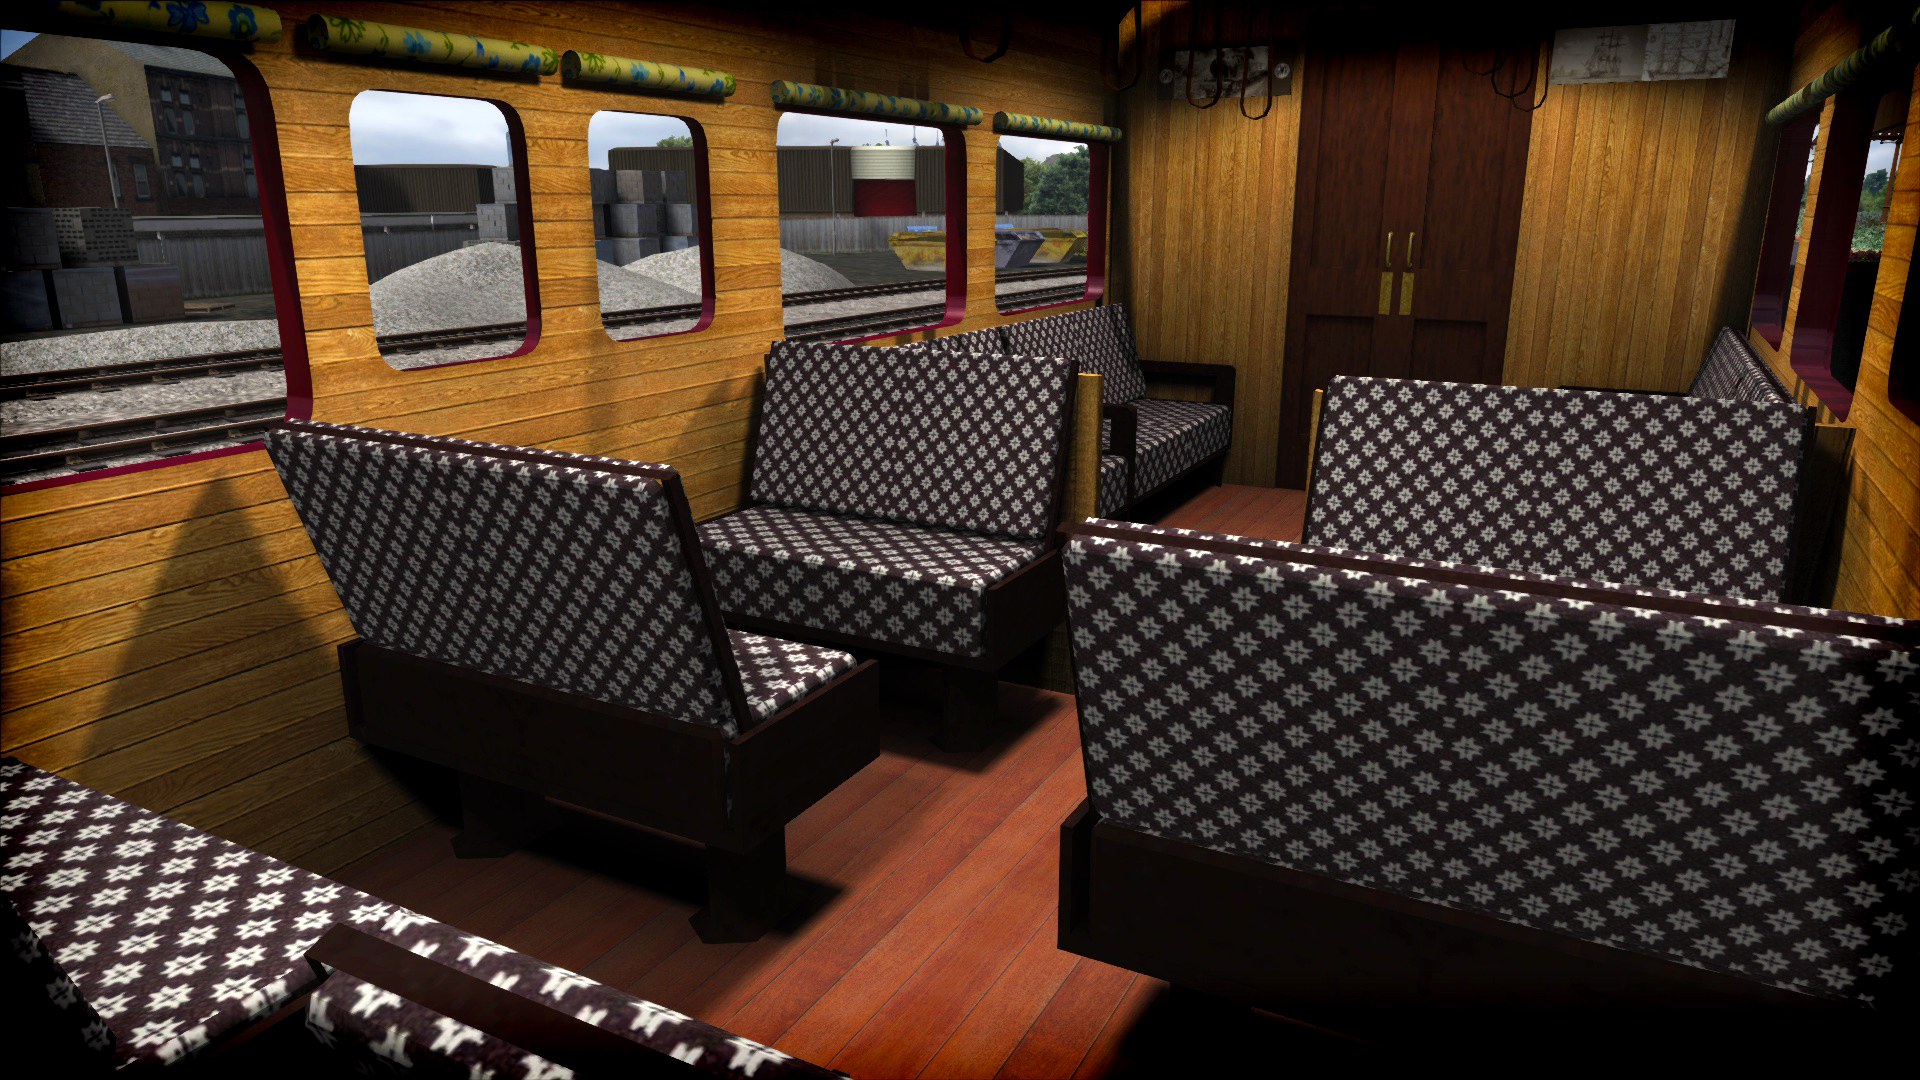 Train Simulator: GWR Steam Railmotor Loco Add-On screenshot